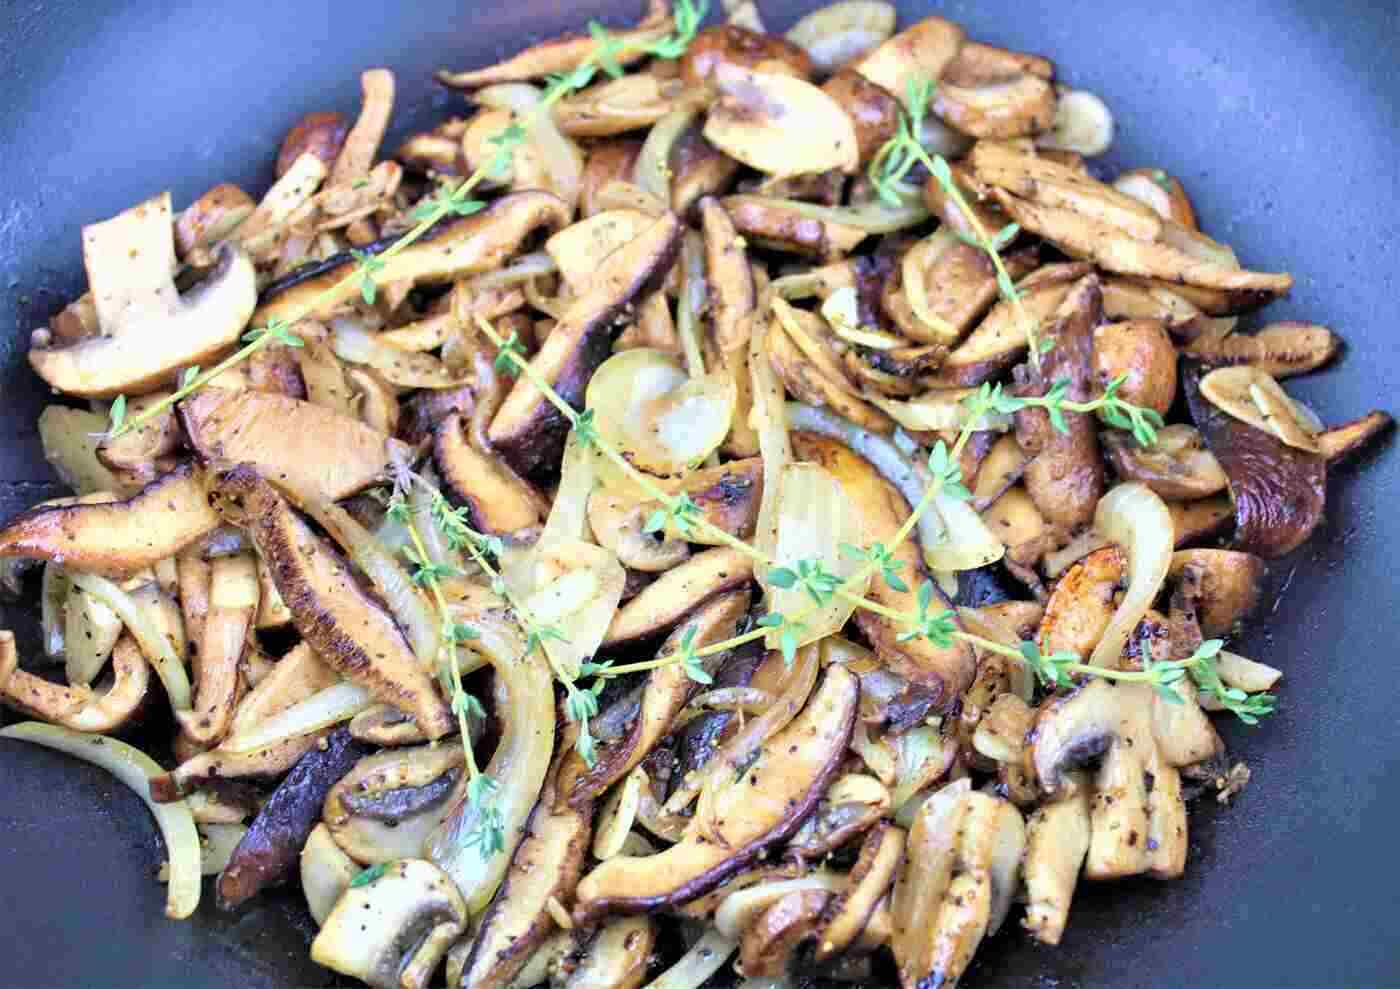 cucina a base di funghi - ricetta vegetariana di stroganoff ai funghi